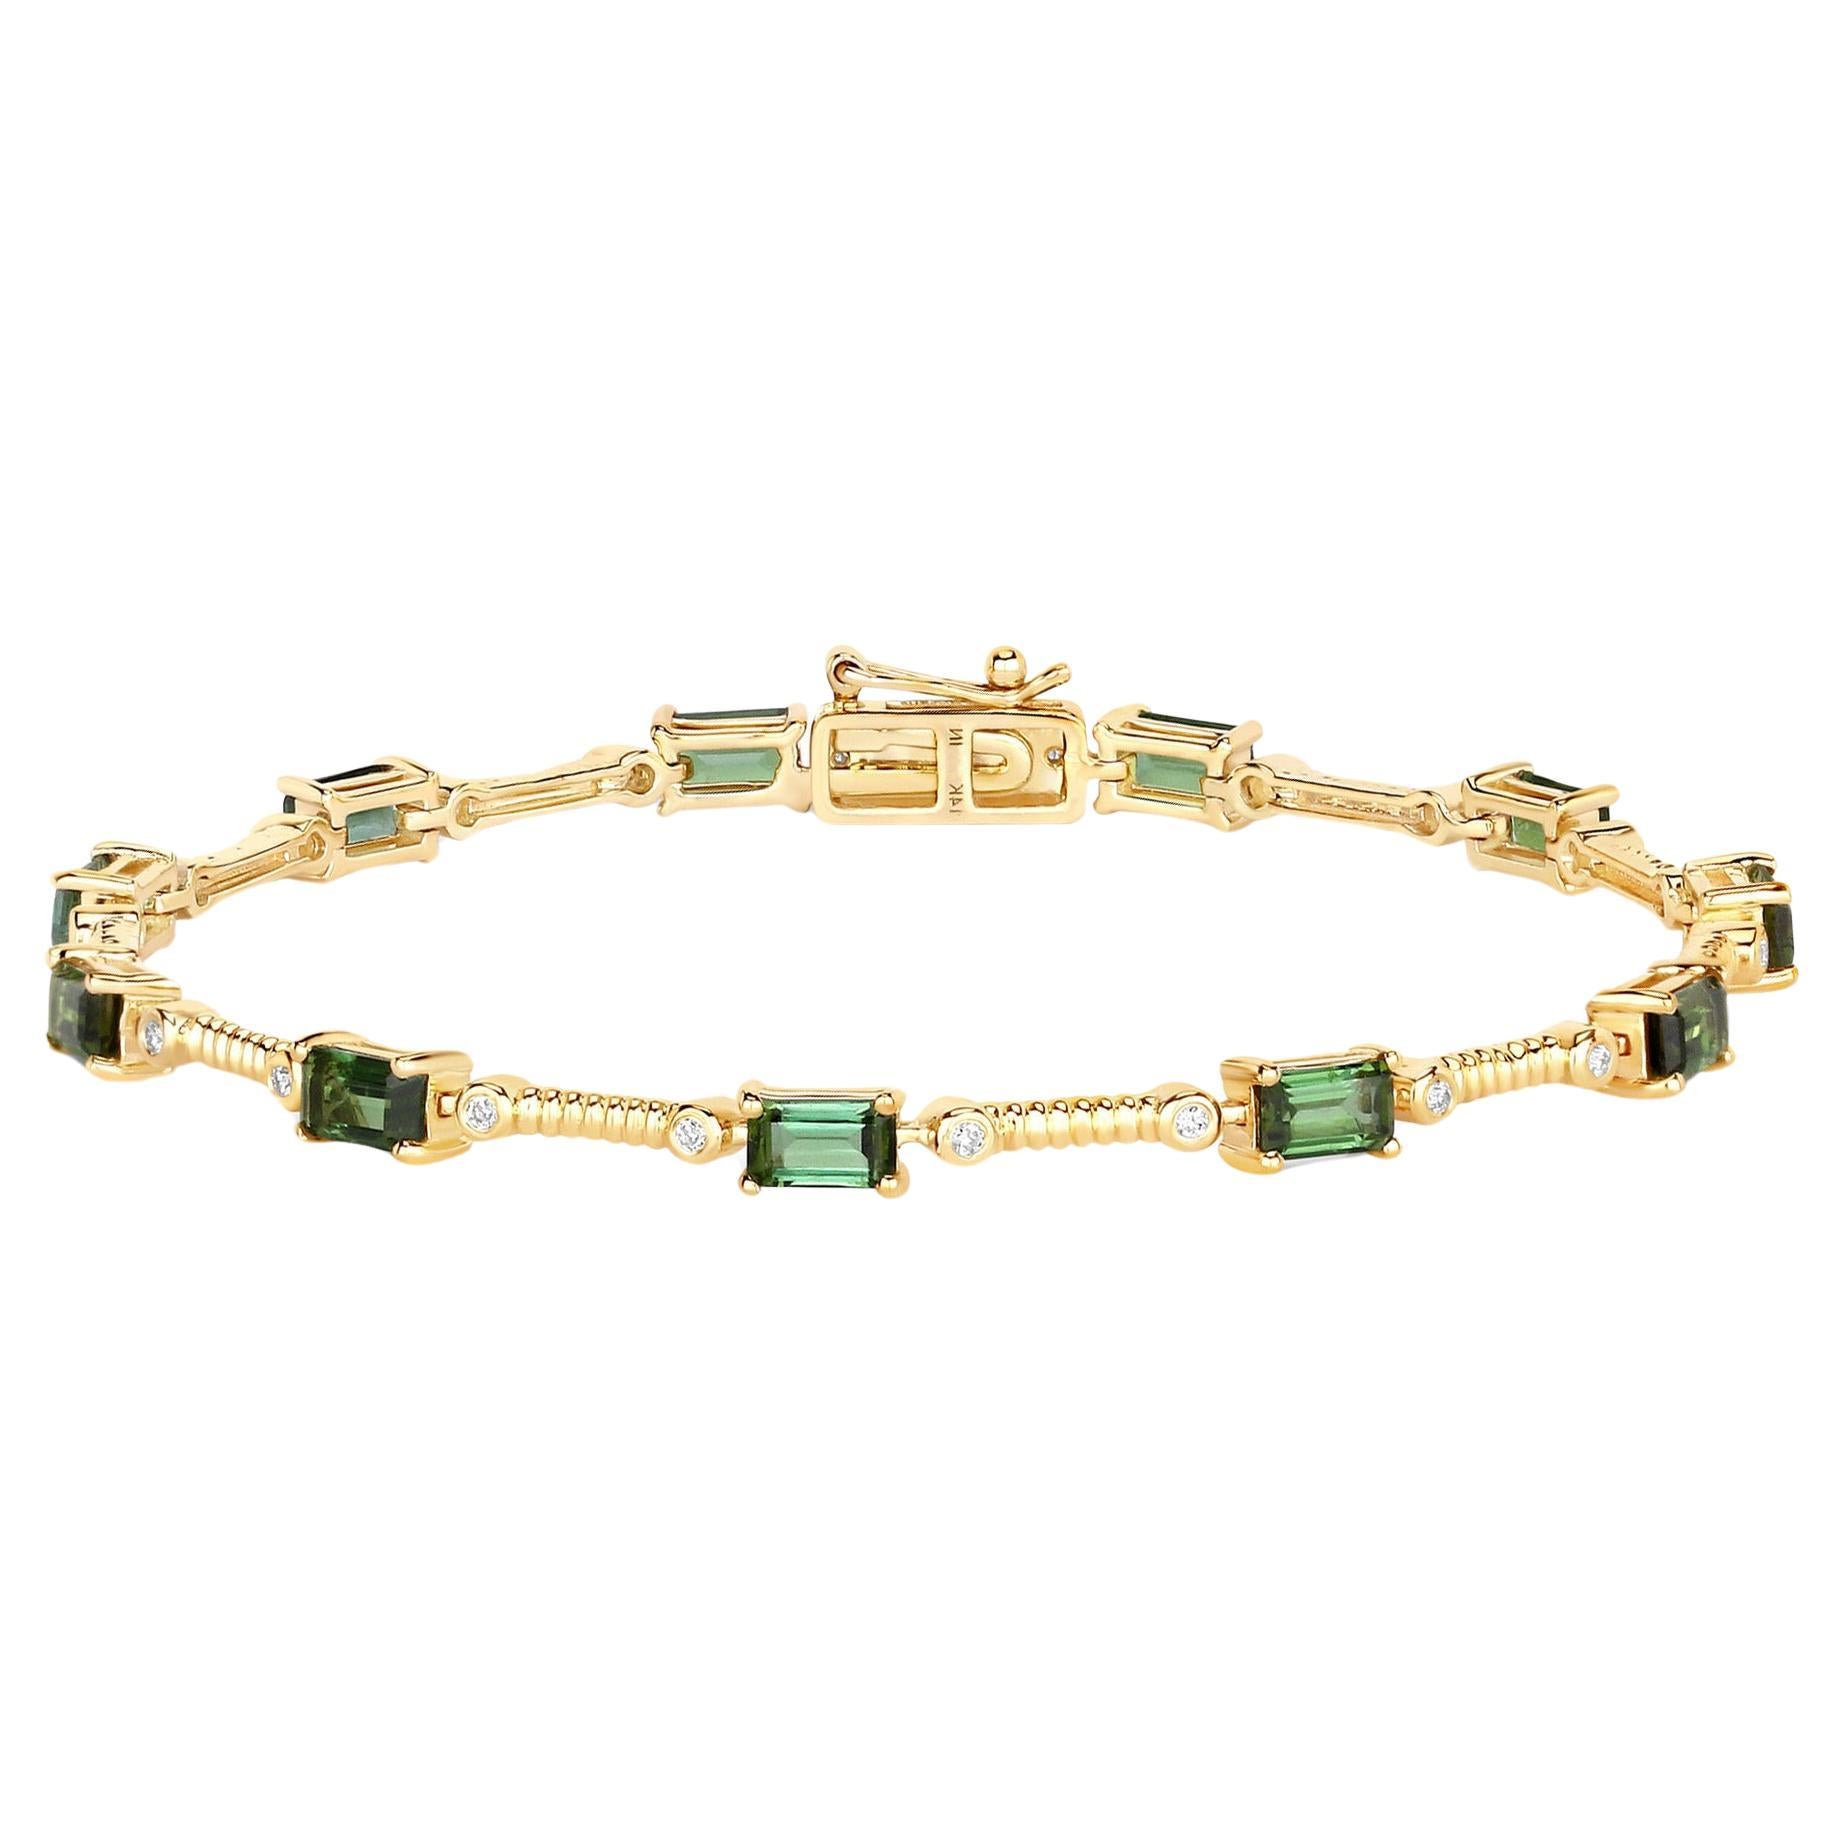 Natural Green Tourmaline and Diamond Link Bracelet 3.25 Carats 14k Yellow Gold